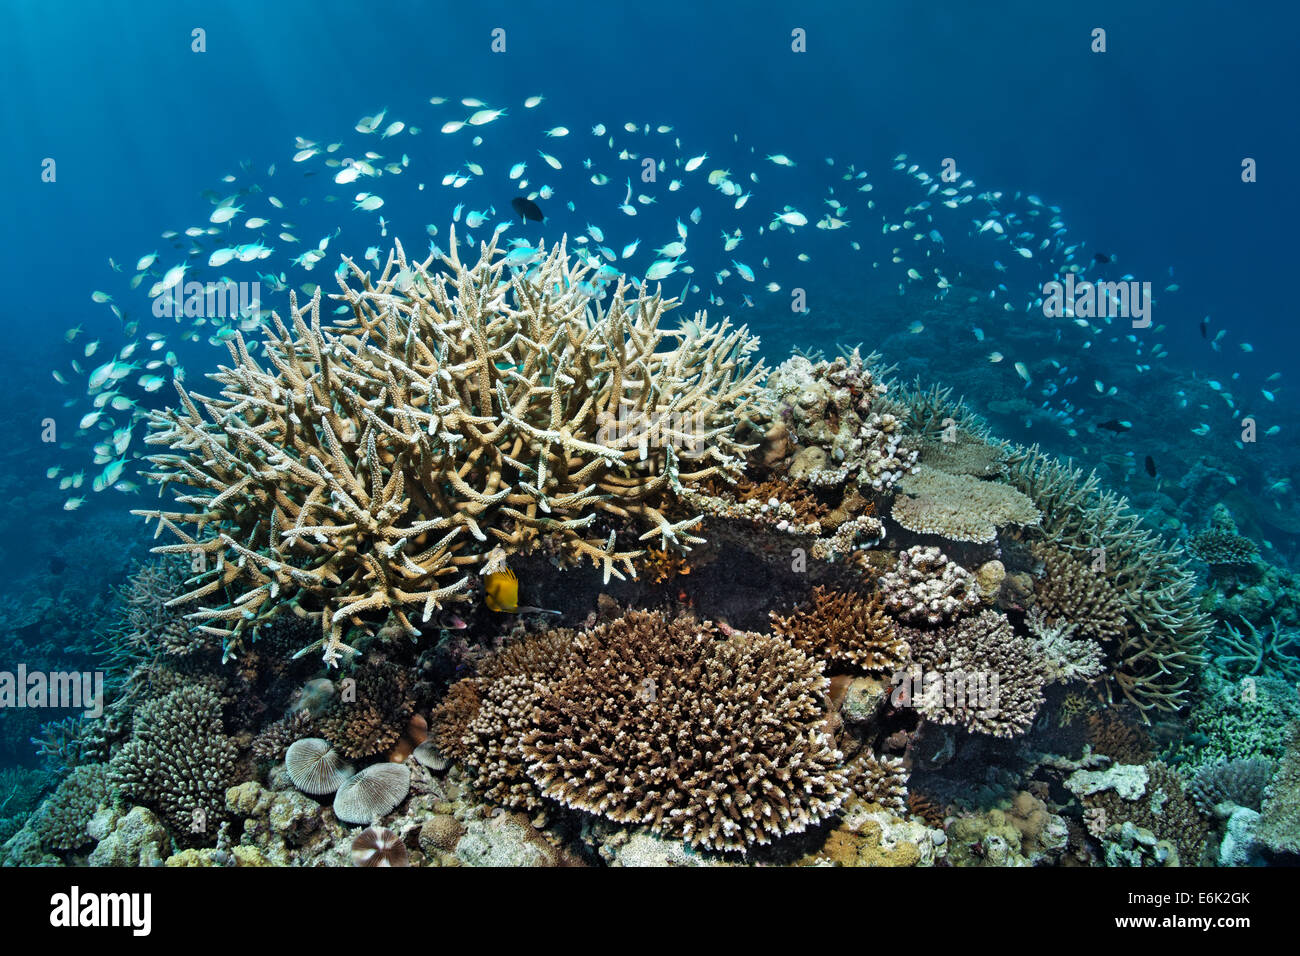 Coral reef avec divers Acropora coraux (Acropora sp.) et d'une école de Chromis vert ou bleu-vert (Chromis Chromis viridis) Banque D'Images